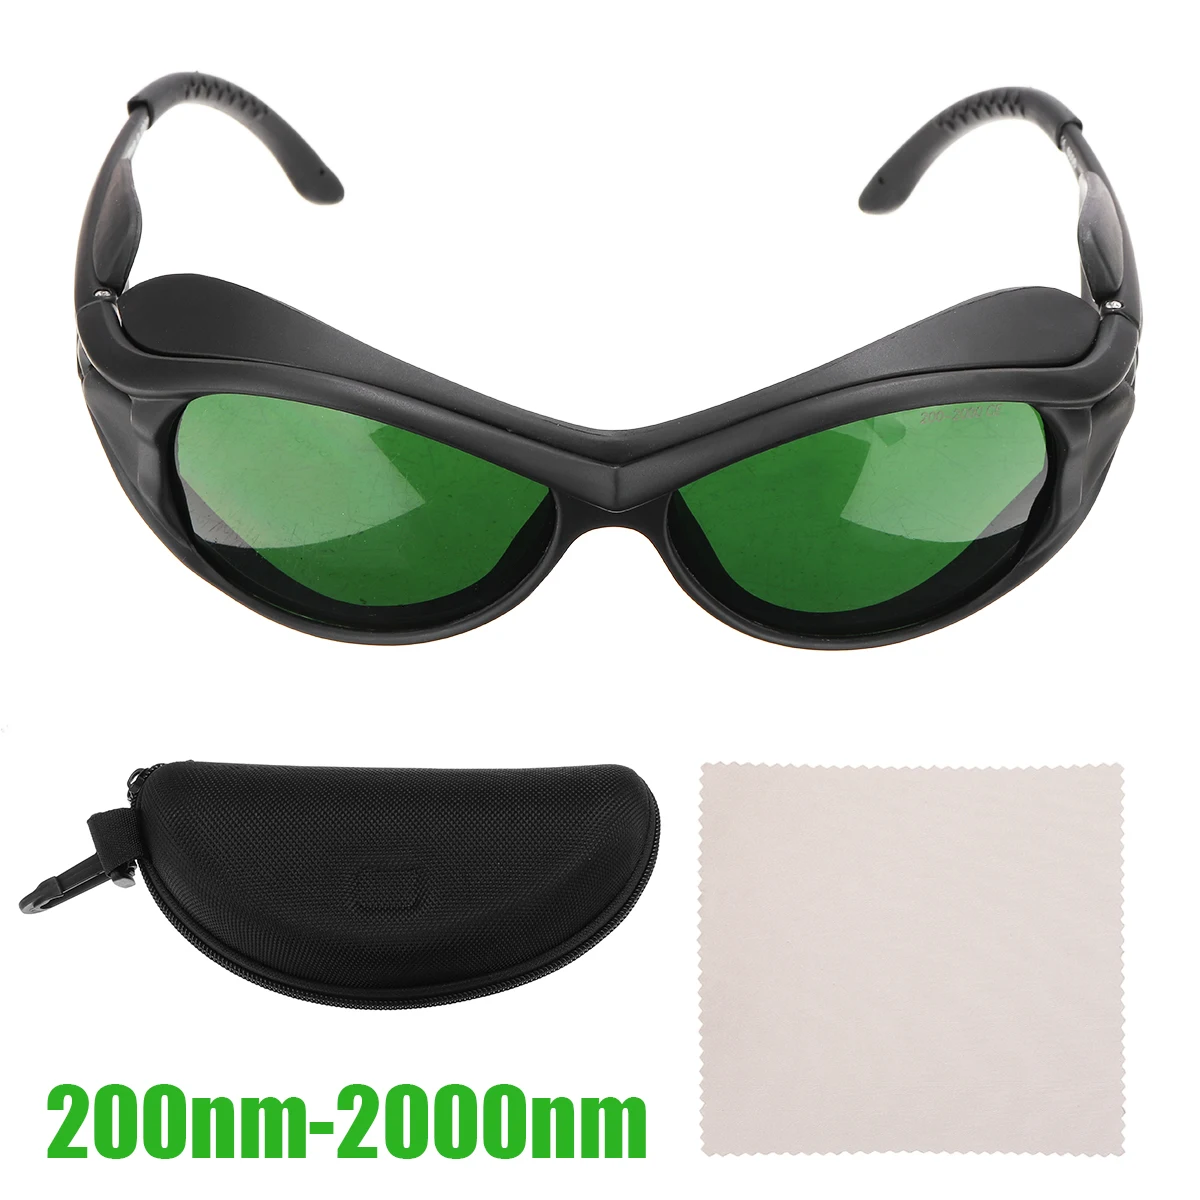 IPL Gözlük 200nm-2000nm UV400 IPL Lazer Koruma Gözlükleri Güvenlik Gözlükleri Sağlık Kozmetoloji Gözler Koruyucu IPL Gözlük Görüntü  4